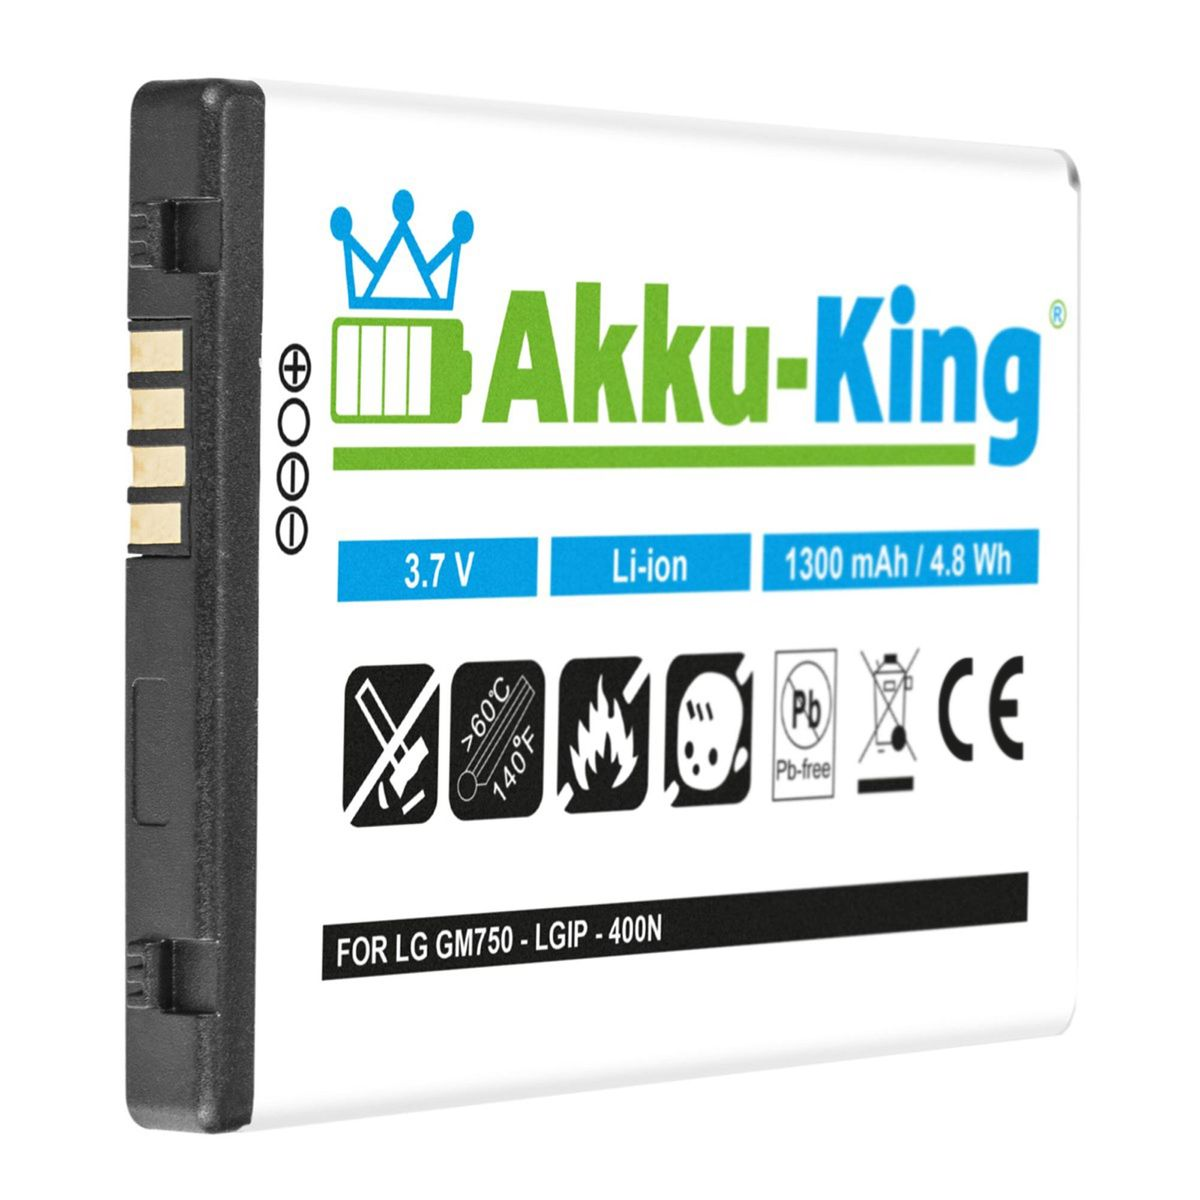 1300mAh mit Handy-Akku, 3.7 Volt, kompatibel Akku Li-Ion LGIP-400N LG AKKU-KING